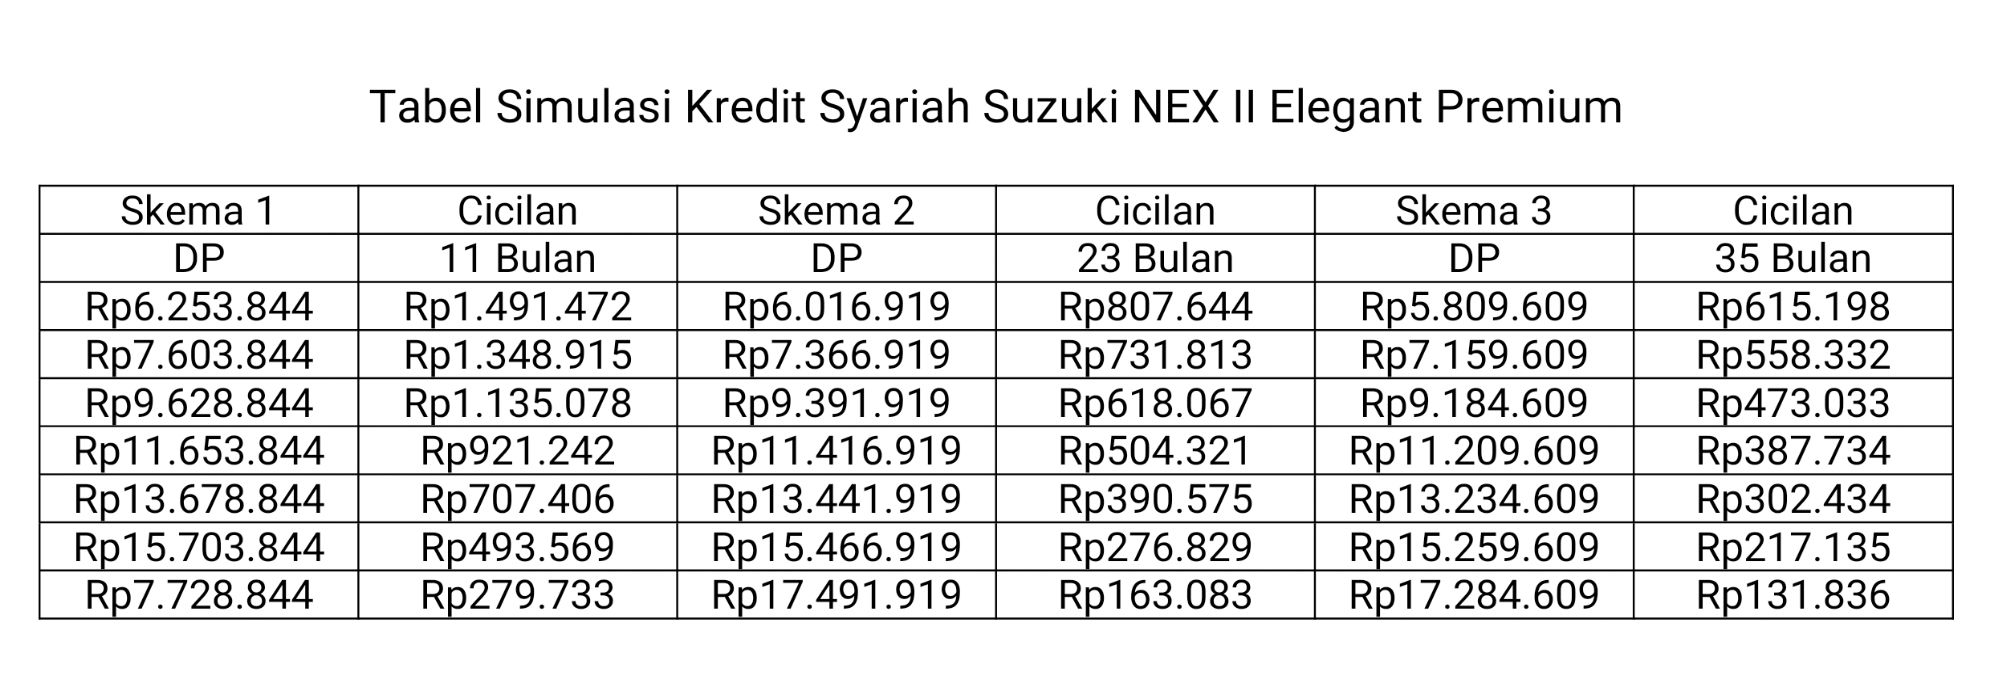 Tabel Simulasi Kredit Syariah Suzuki NEX II Elegant Premium.